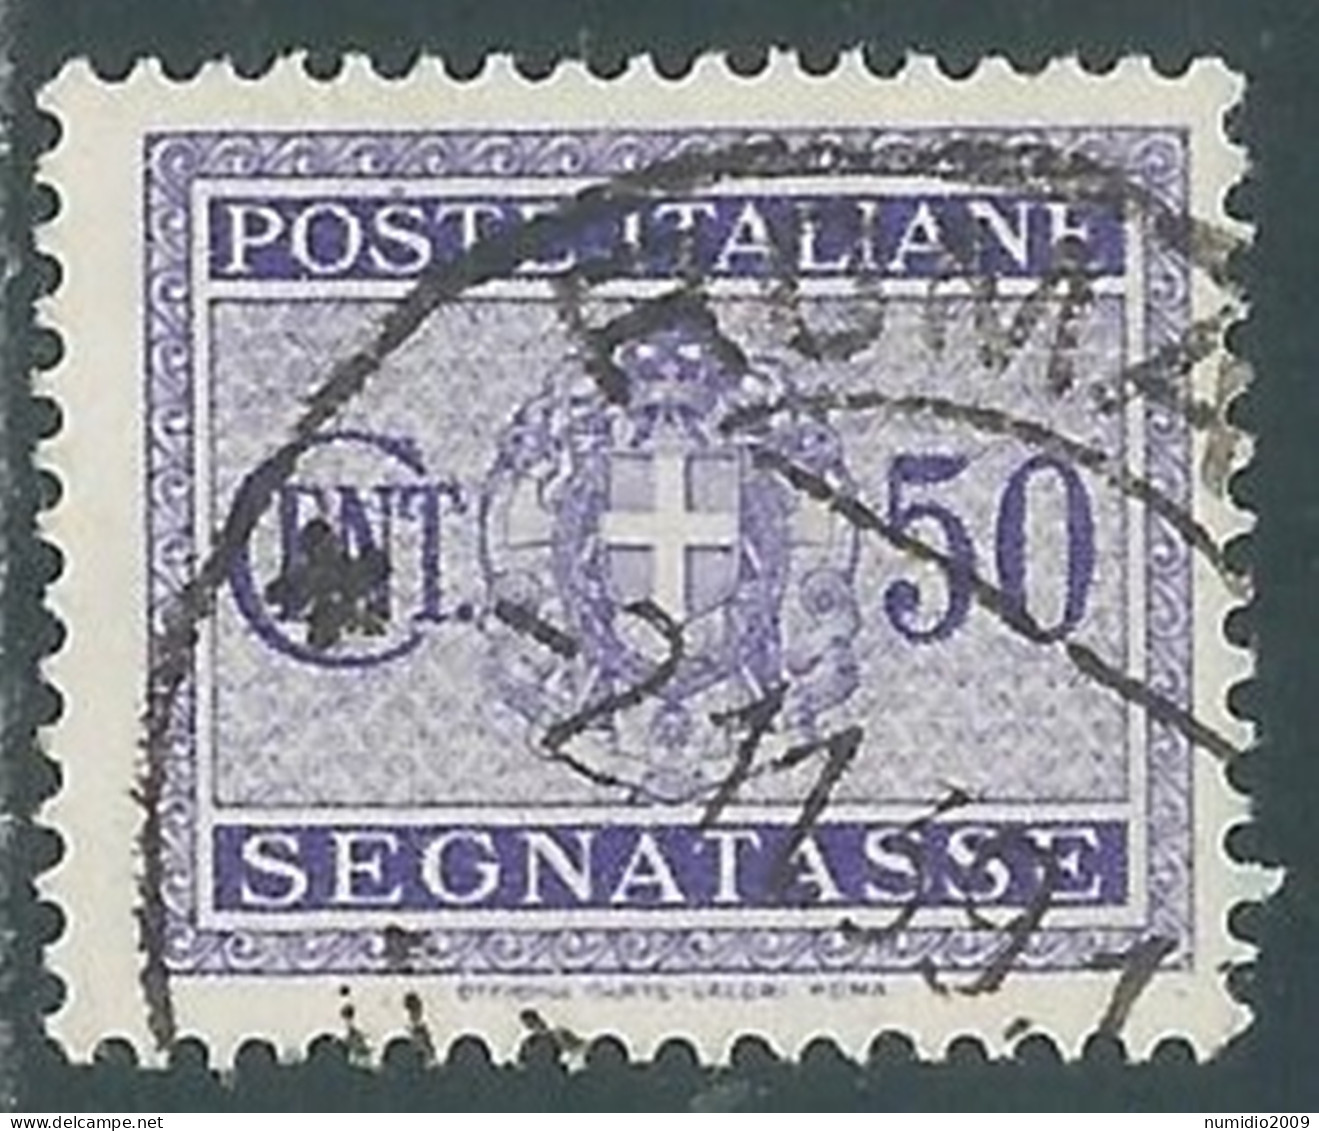 1934 REGNO SEGNATASSE USATO 50 CENT - P13-8 - Postage Due